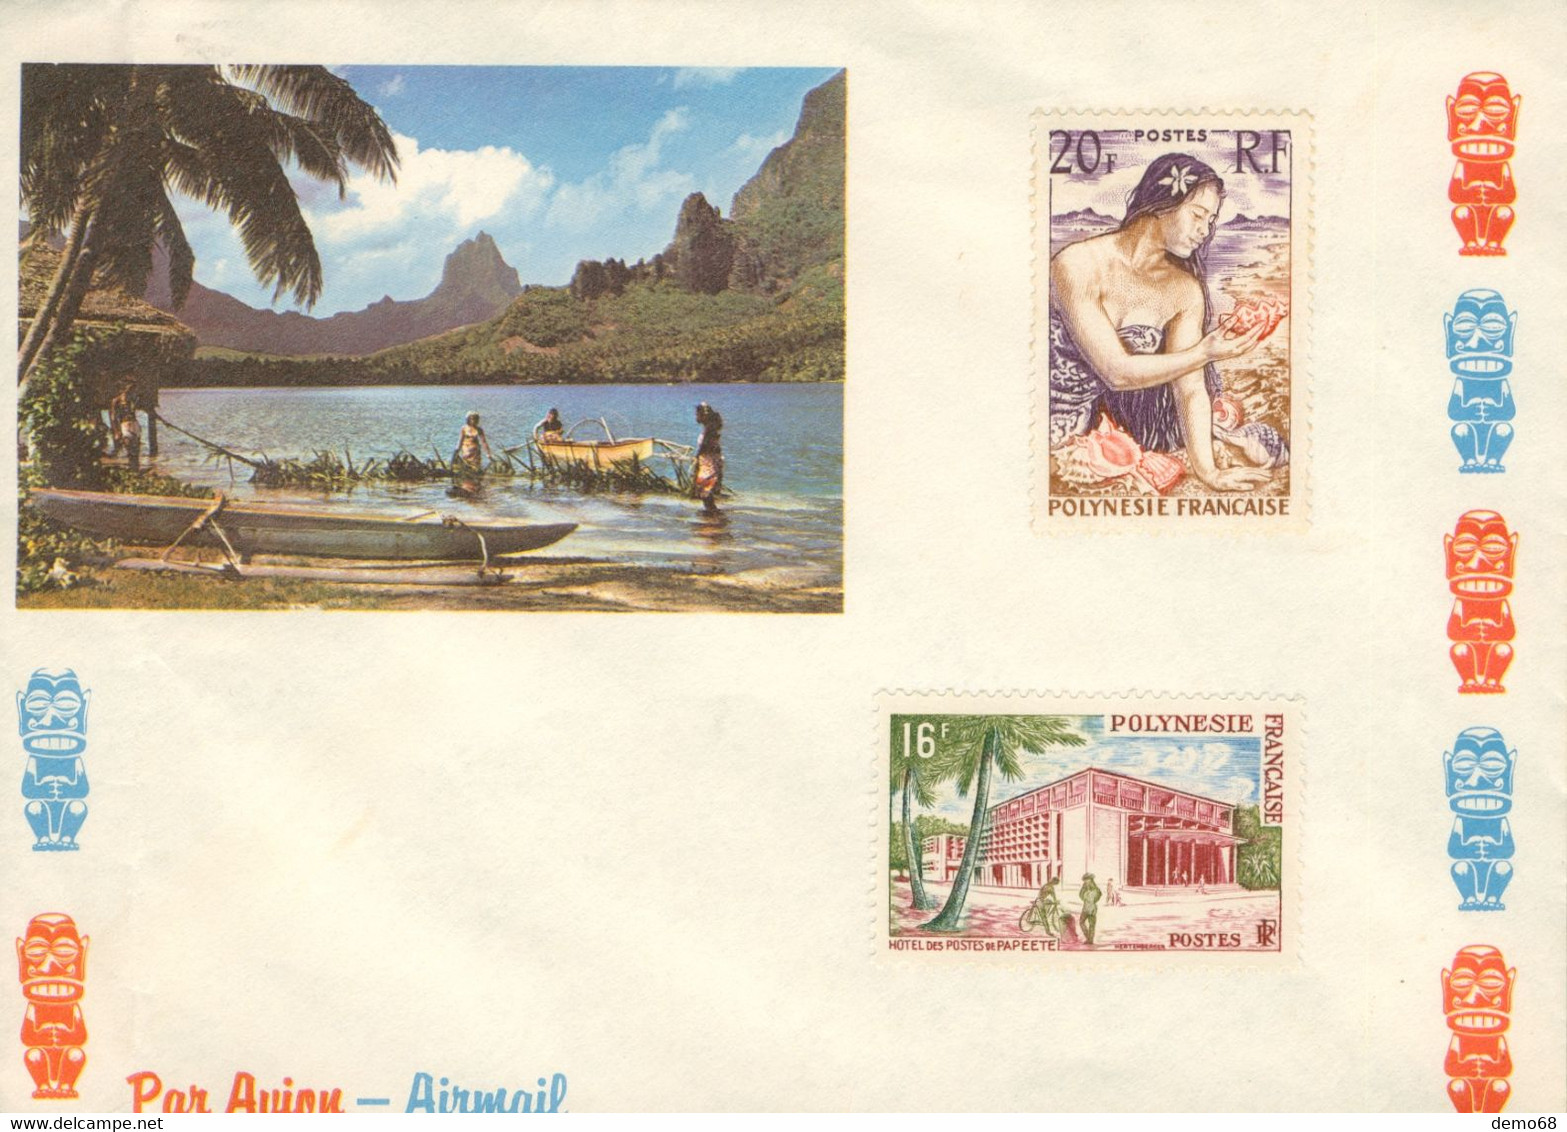 Stamp Timbre Polynésie Française 2 Timbres Neuf Non Oblitérés Poste Aérienne Sur Enveloppe Année ? Papeete - 1960-.... Mint/hinged